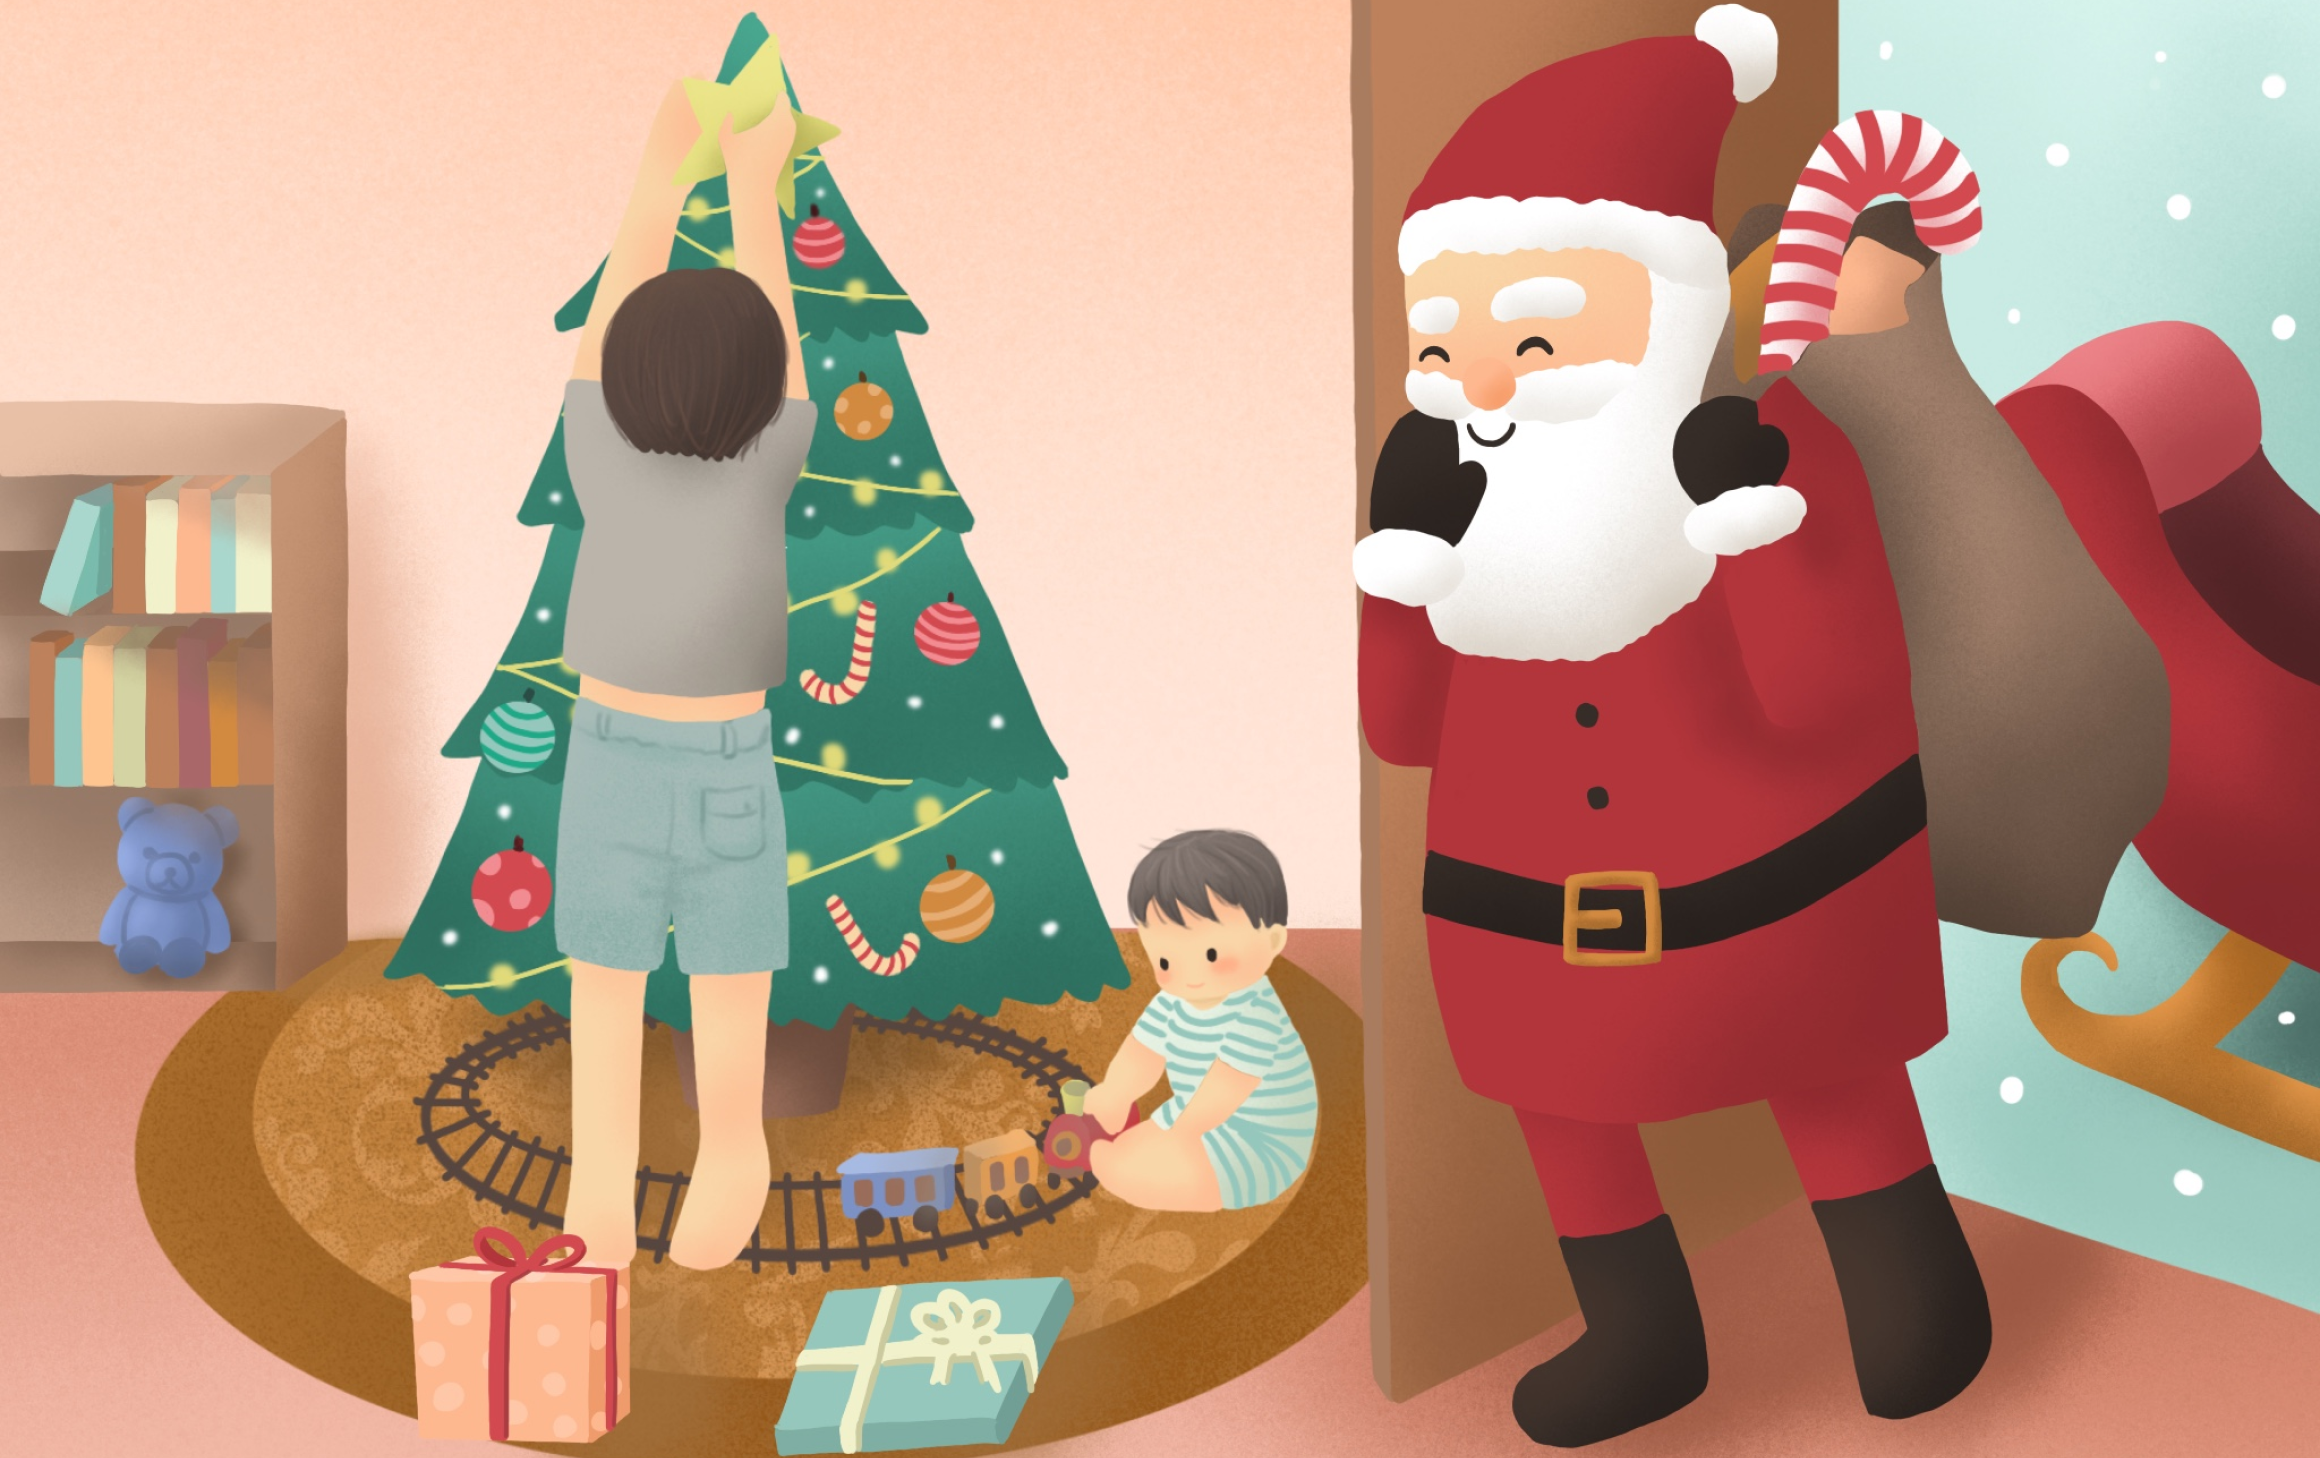 Illustrations - Santa's Visit